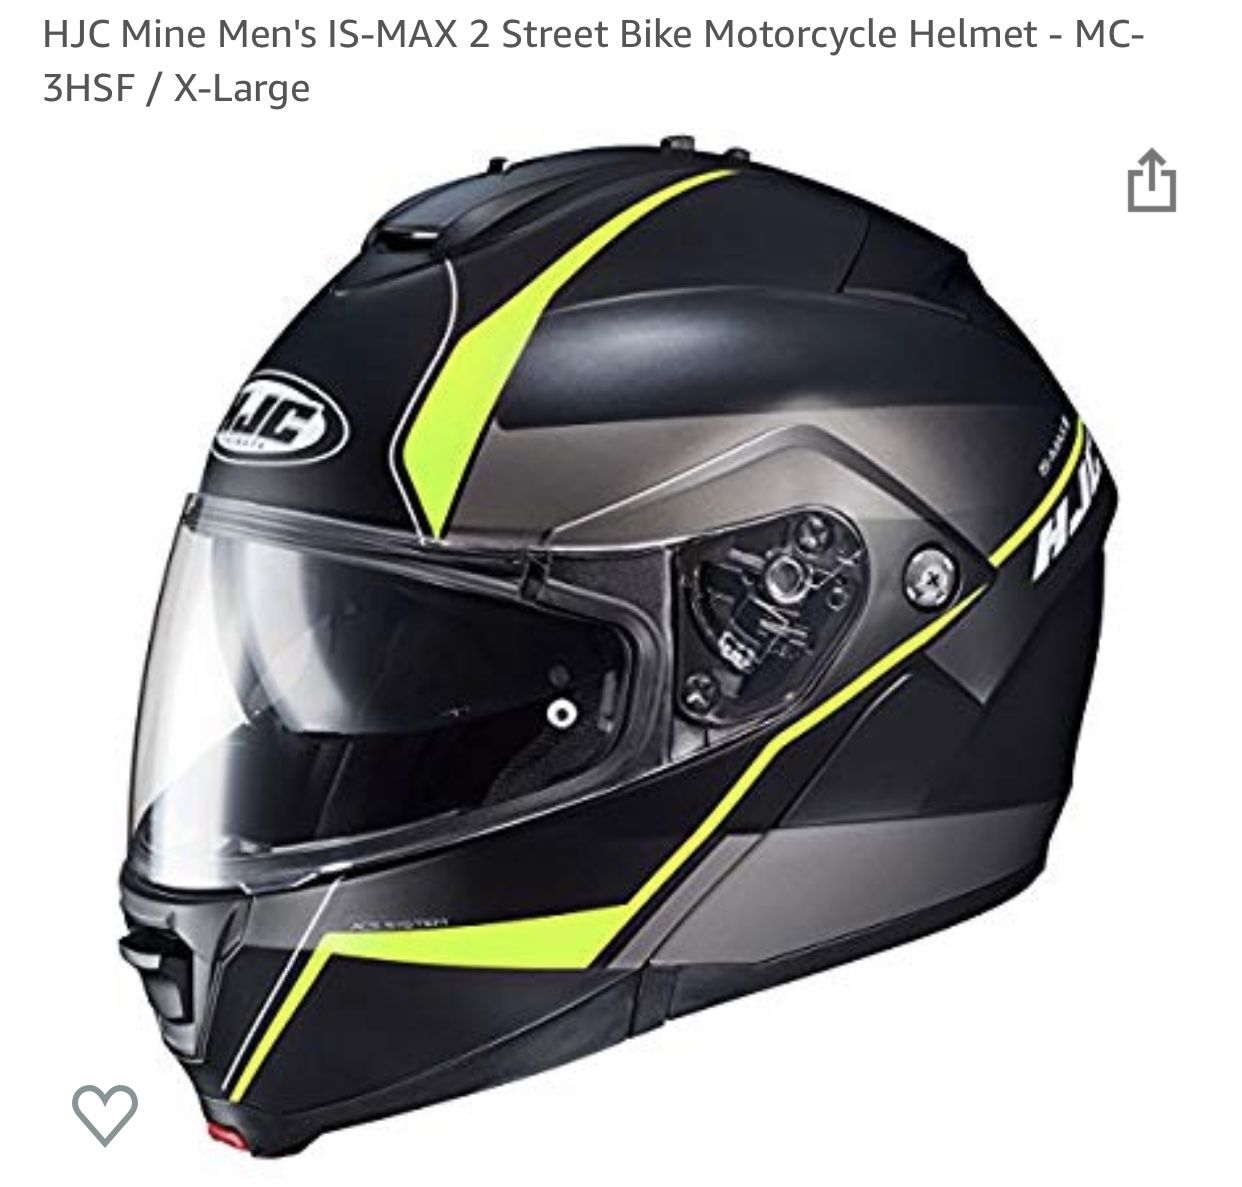 HJC Mine Men's IS-MAX 2 Street Bike Motorcycle Helmet